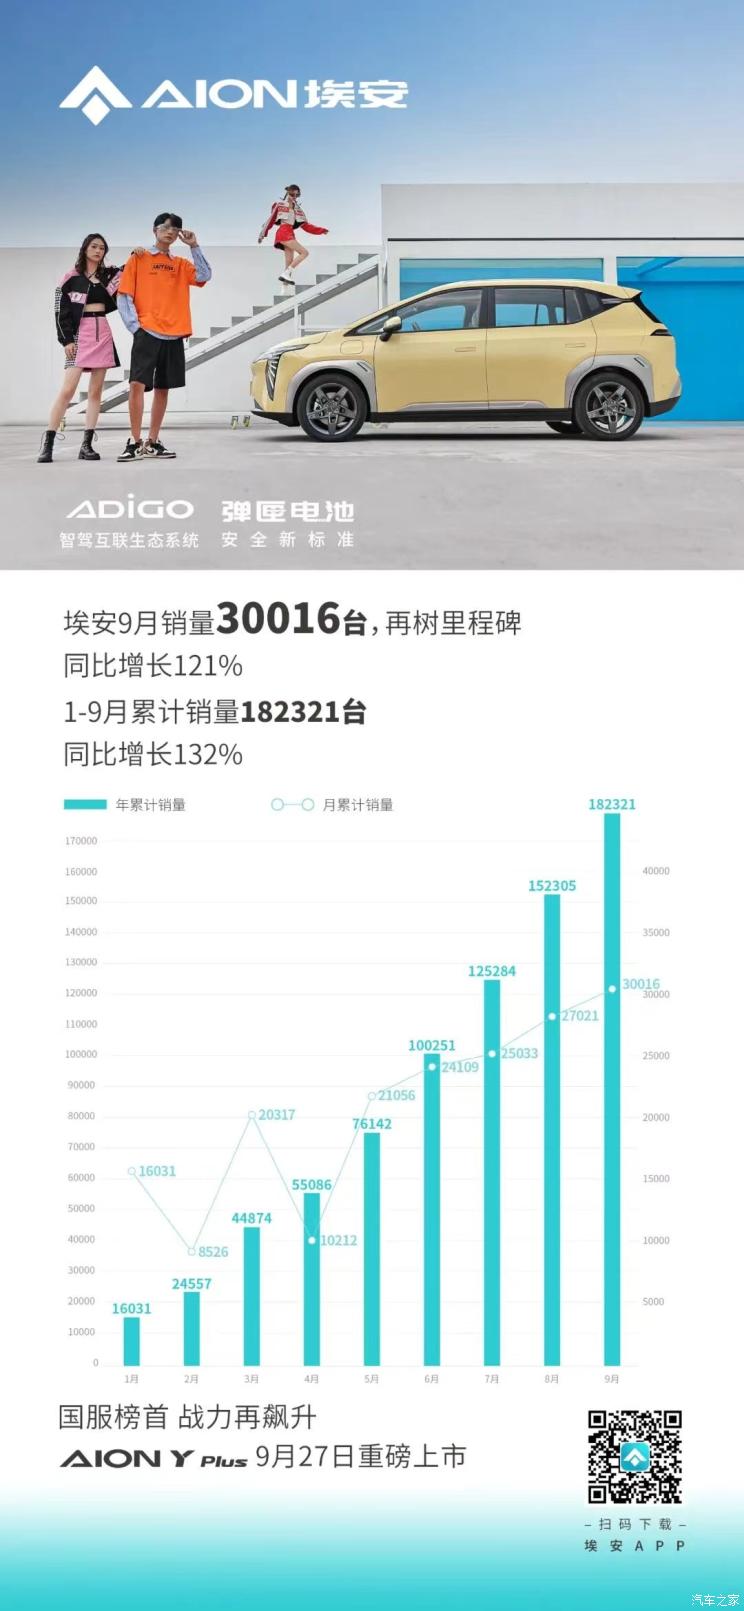 30016台广汽埃安9月销量达新里程碑